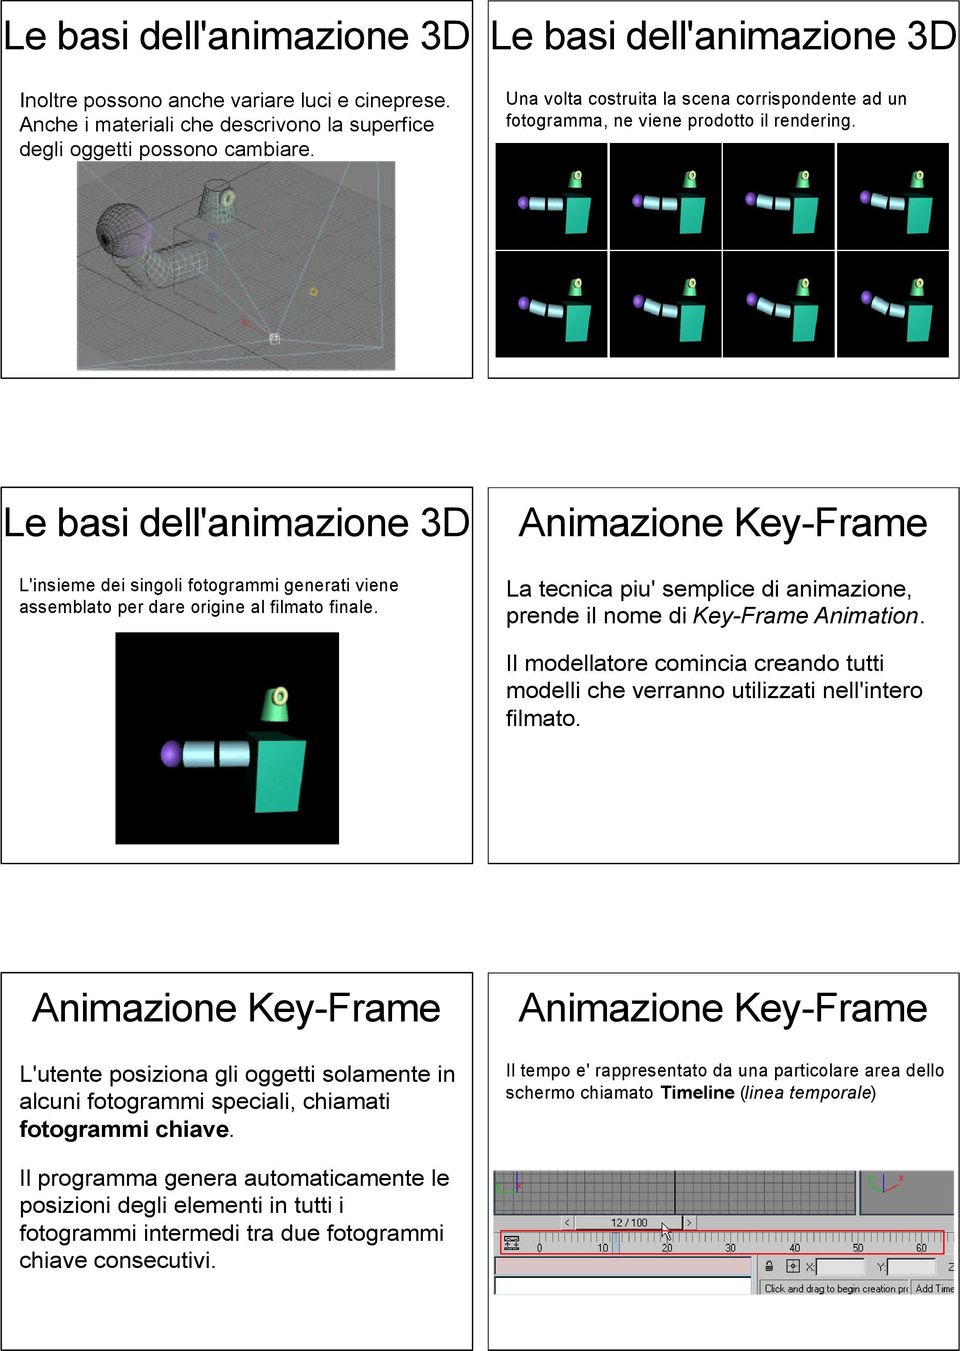 La tecnica piu' semplice di animazione, prende il nome di Key-Frame Animation. Il modellatore comincia creando tutti modelli che verranno utilizzati nell'intero filmato.